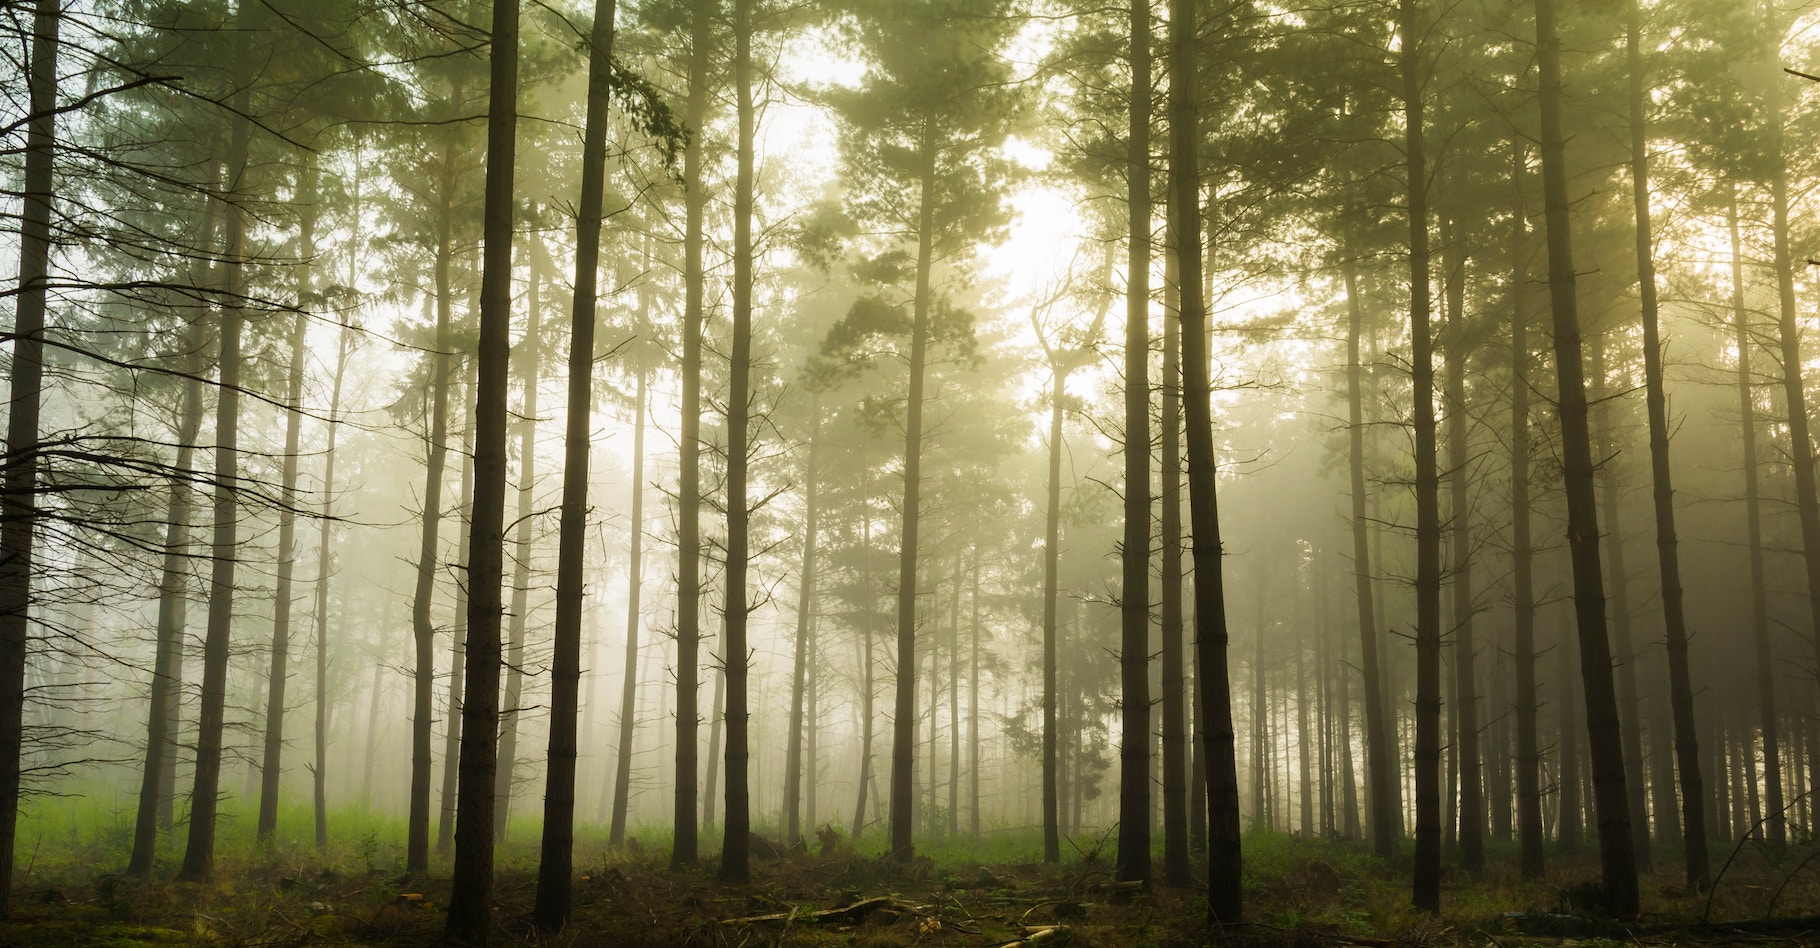 Une étude révèle que la pression de vapeur et les variations de température sont les facteurs climatiques qui affectent le plus nos forêts. © Julien R, Unsplash